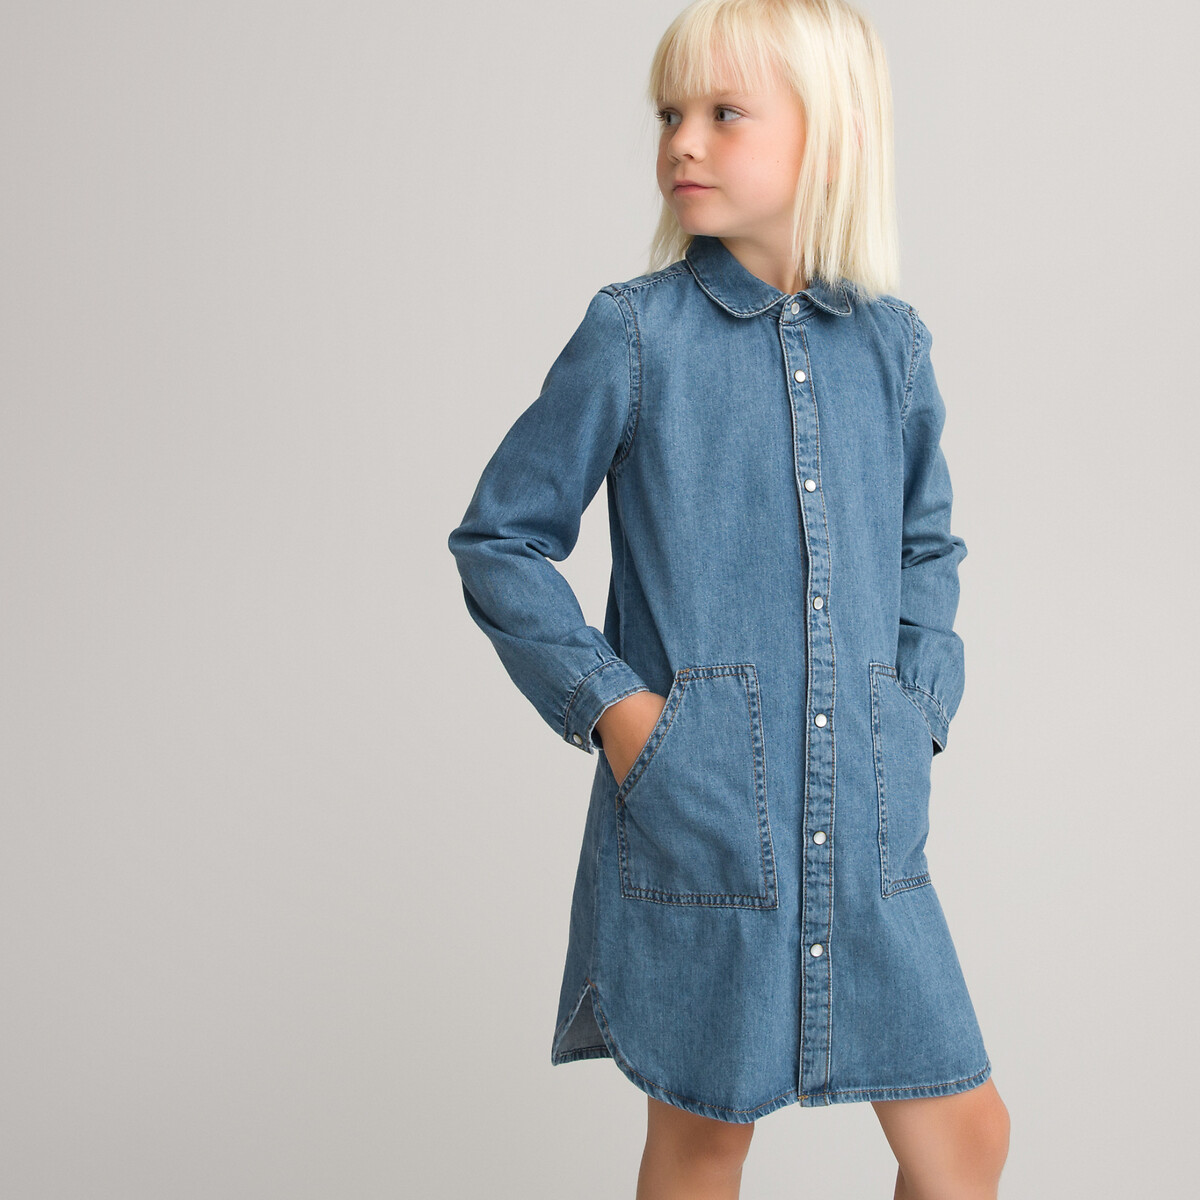 Платье LaRedoute Прямое джинсовое 3-12 лет 8 лет - 126 см синий, размер 8 лет - 126 см